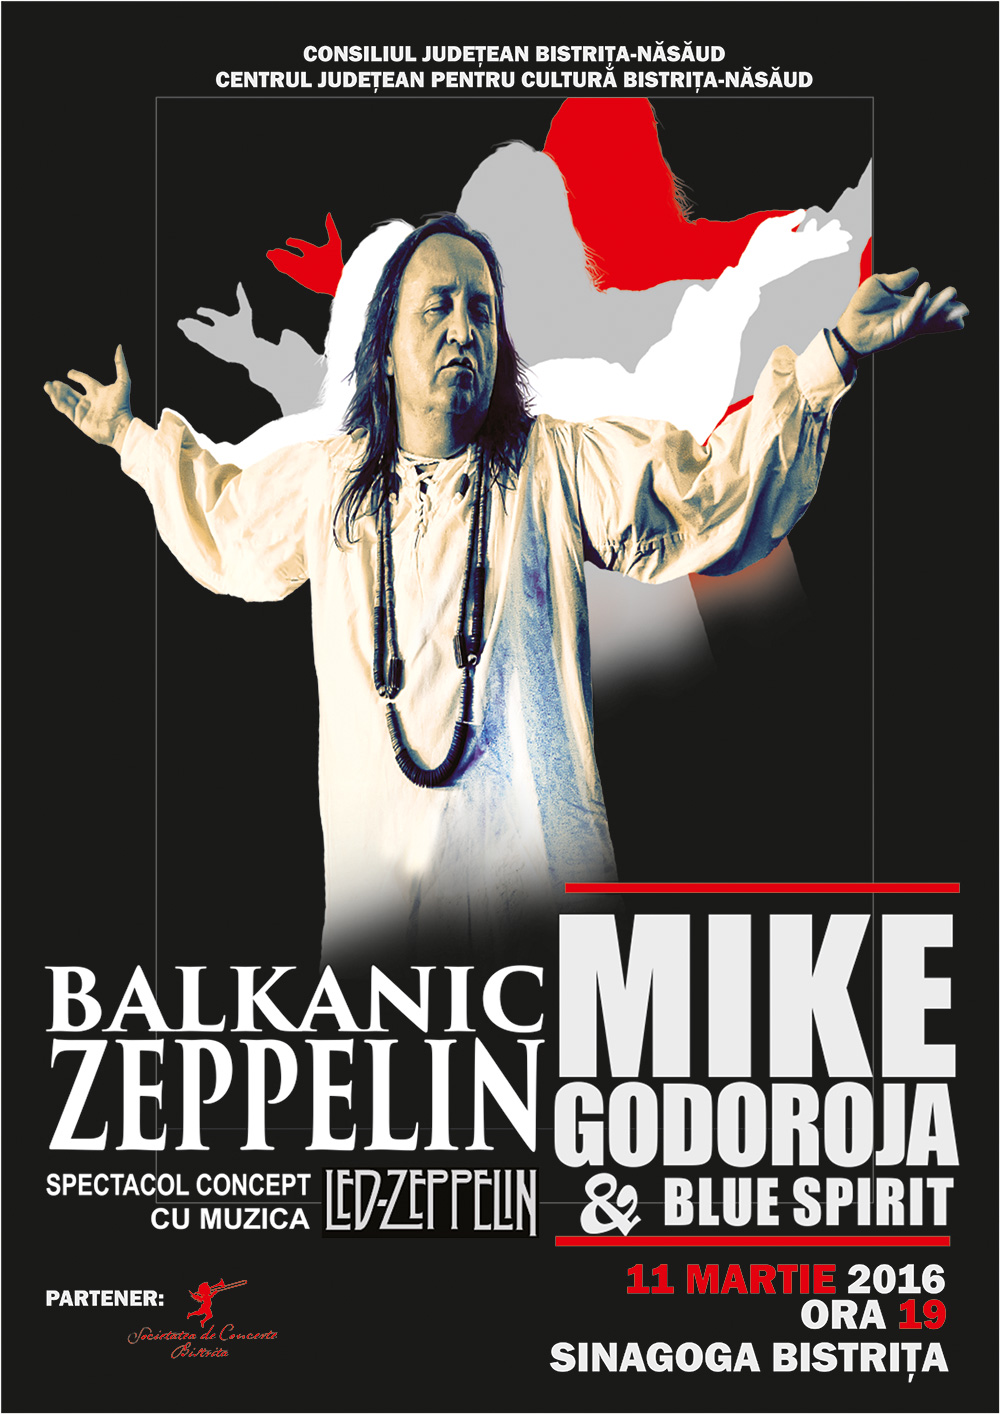 Balkanic-Zeppelin-Mike-Godoroja-Blue-Spirit